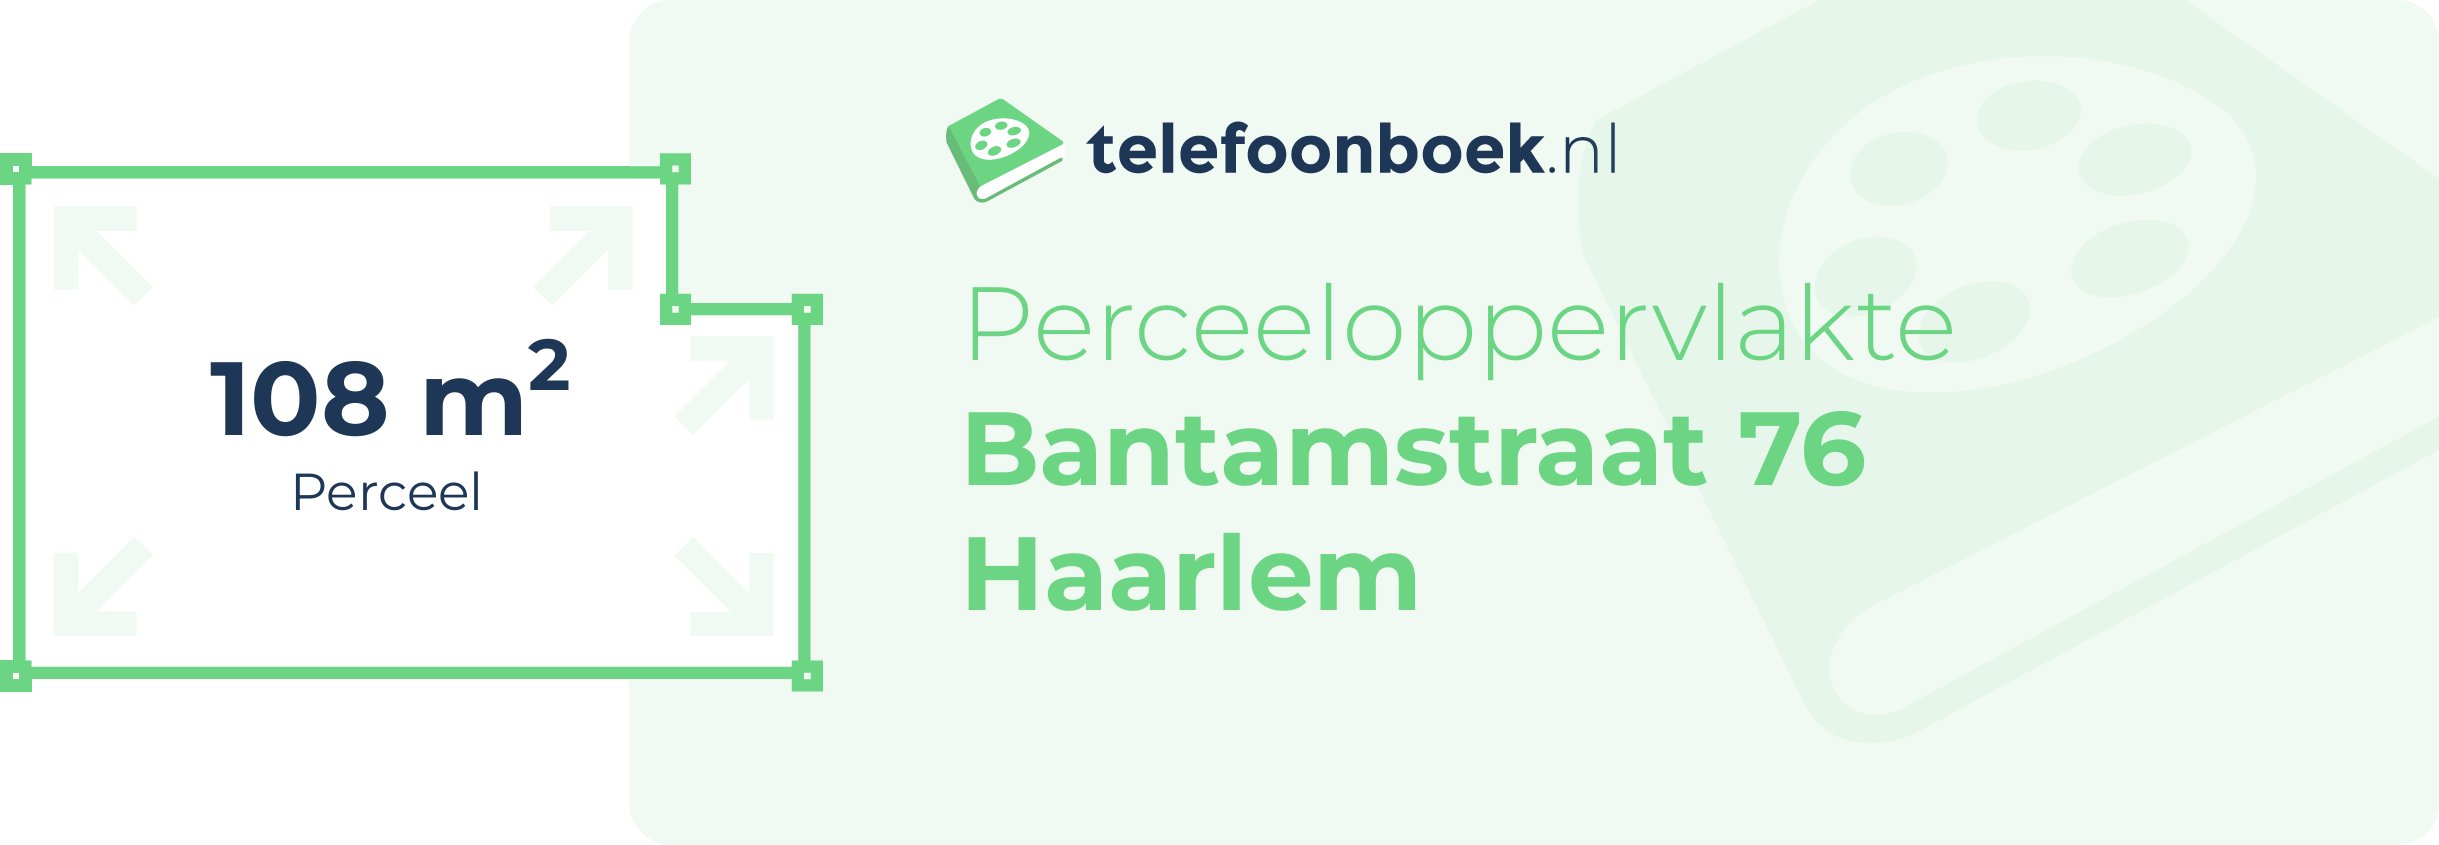 Perceeloppervlakte Bantamstraat 76 Haarlem